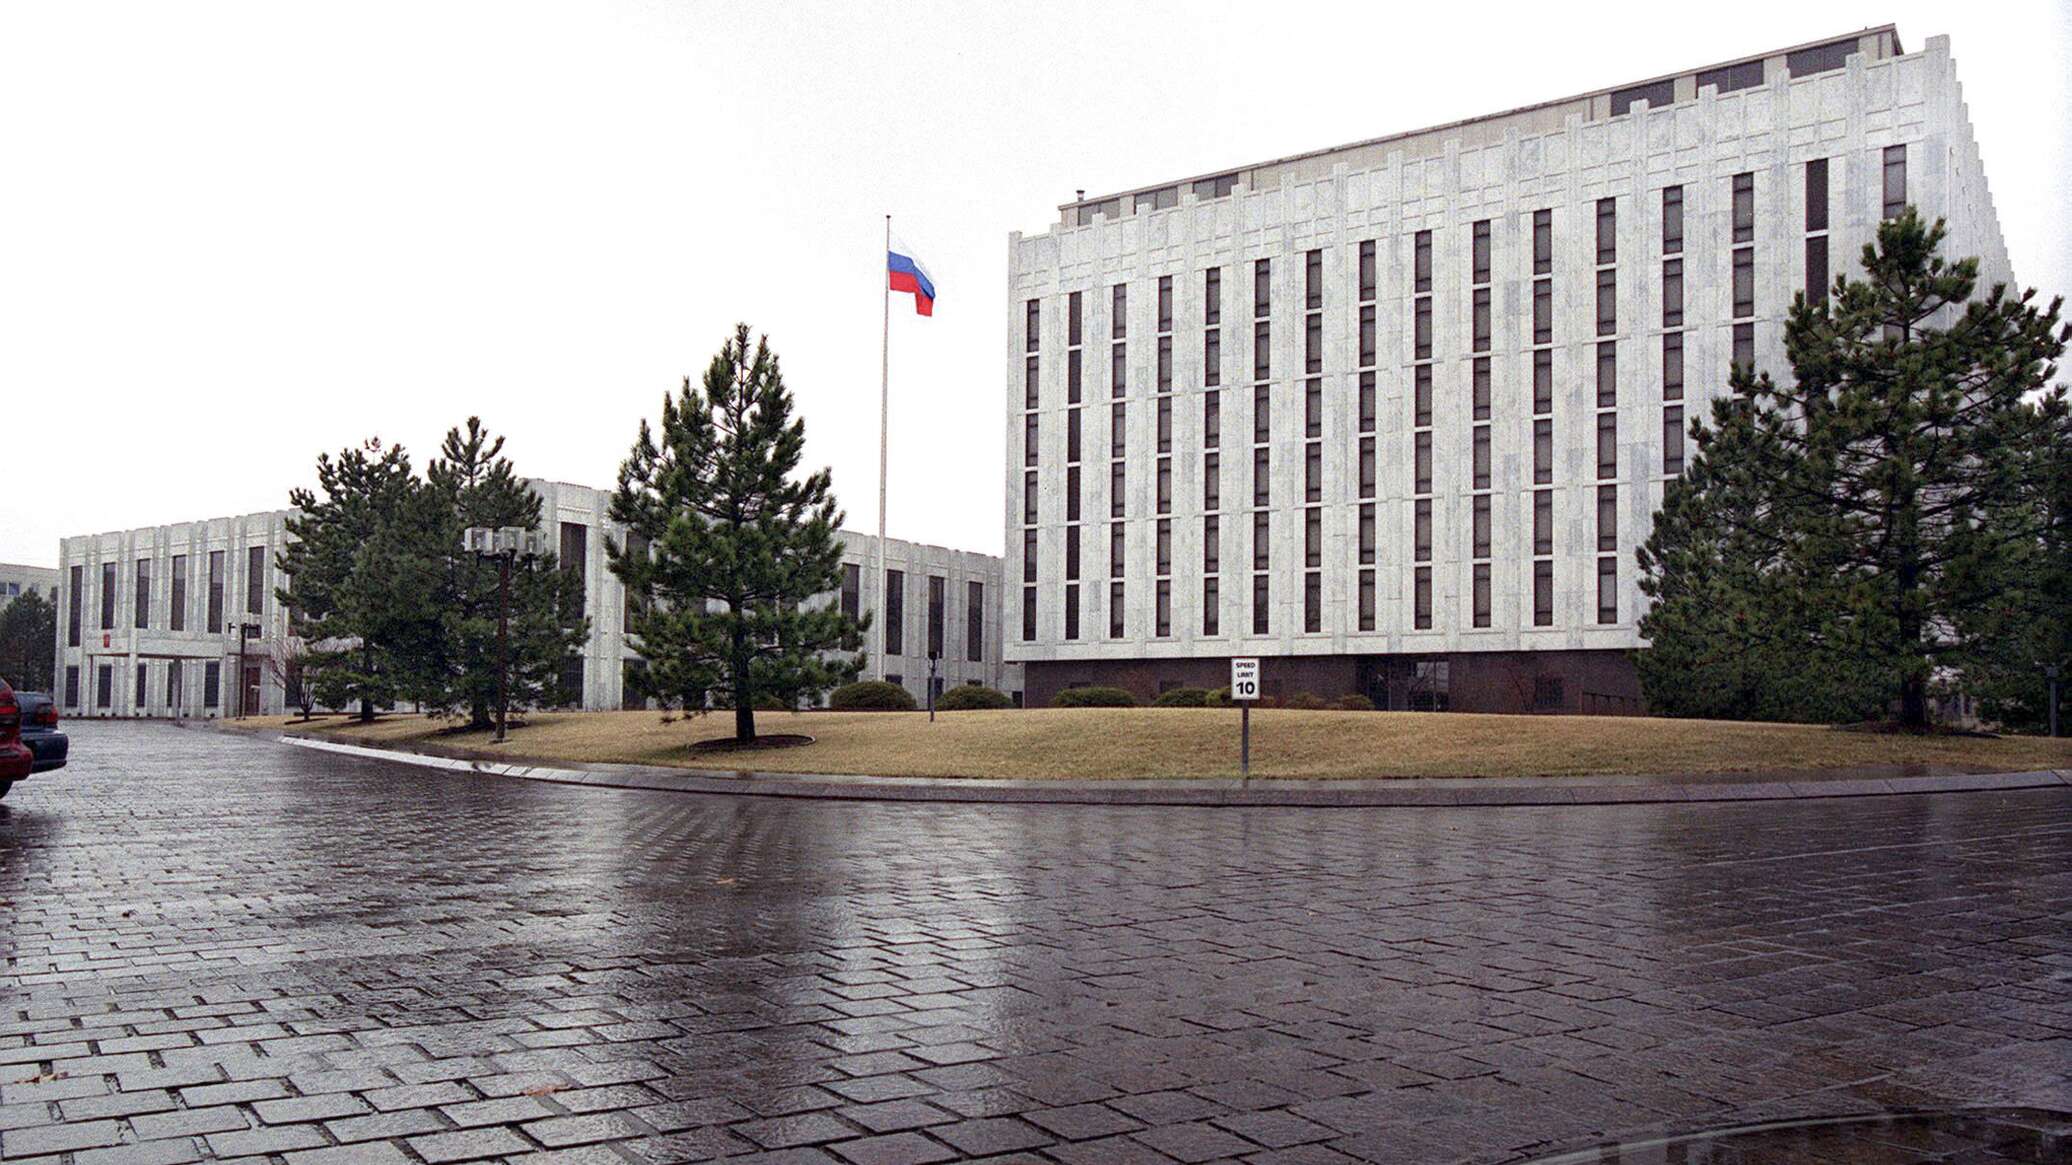 السفارة الروسية في واشنطن: التسريبات حول هجوم "نورد ستريم" الإرهابي مصممة لإخفاء الحقيقة